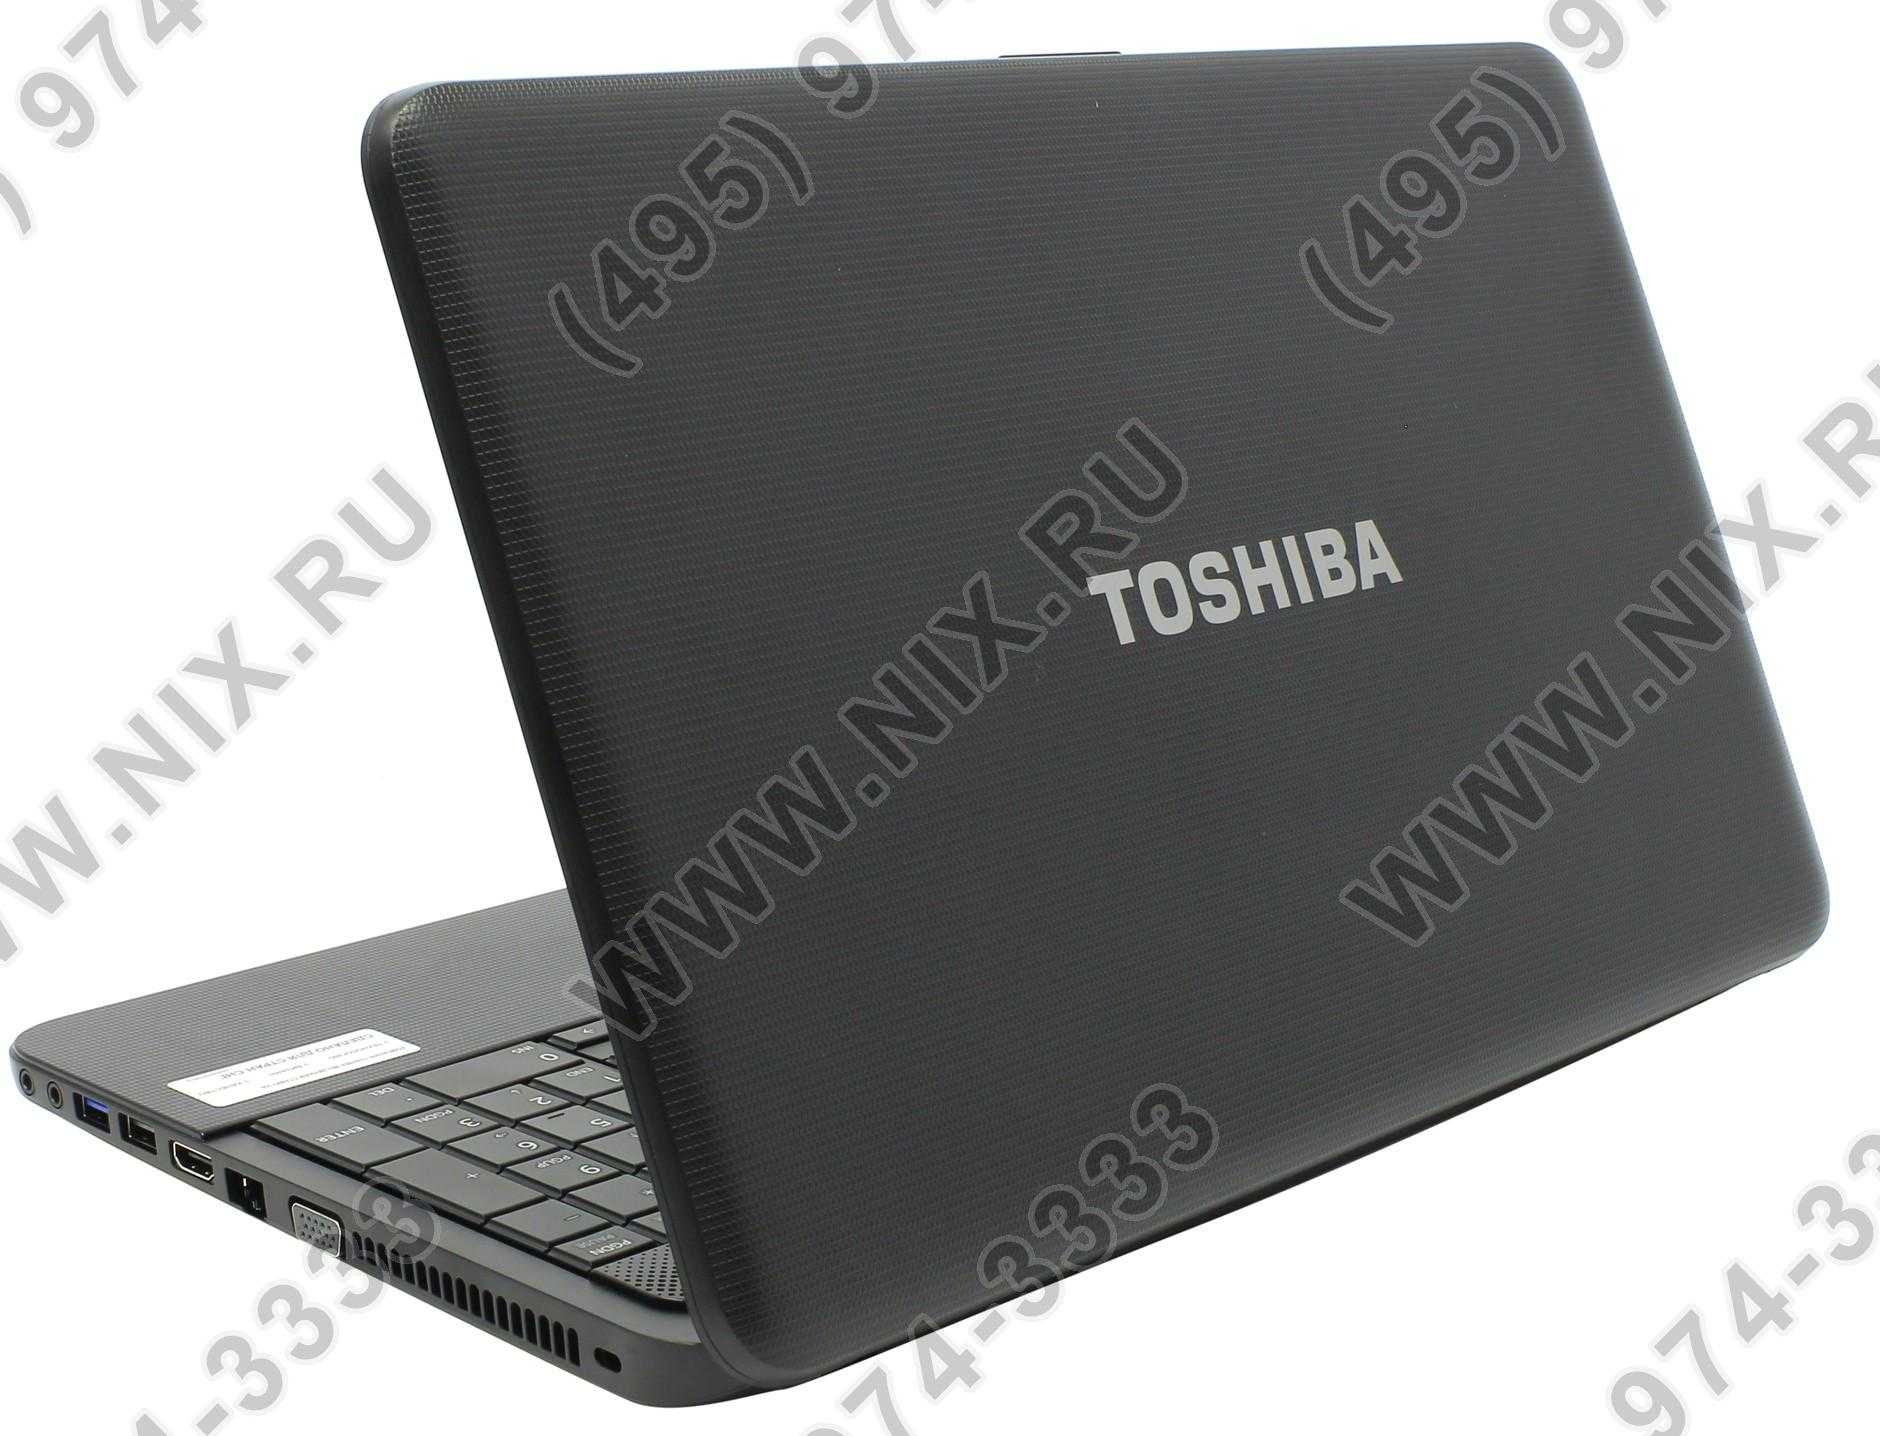 Ноутбук toshiba satellite c850d-c8k — купить, цена и характеристики, отзывы